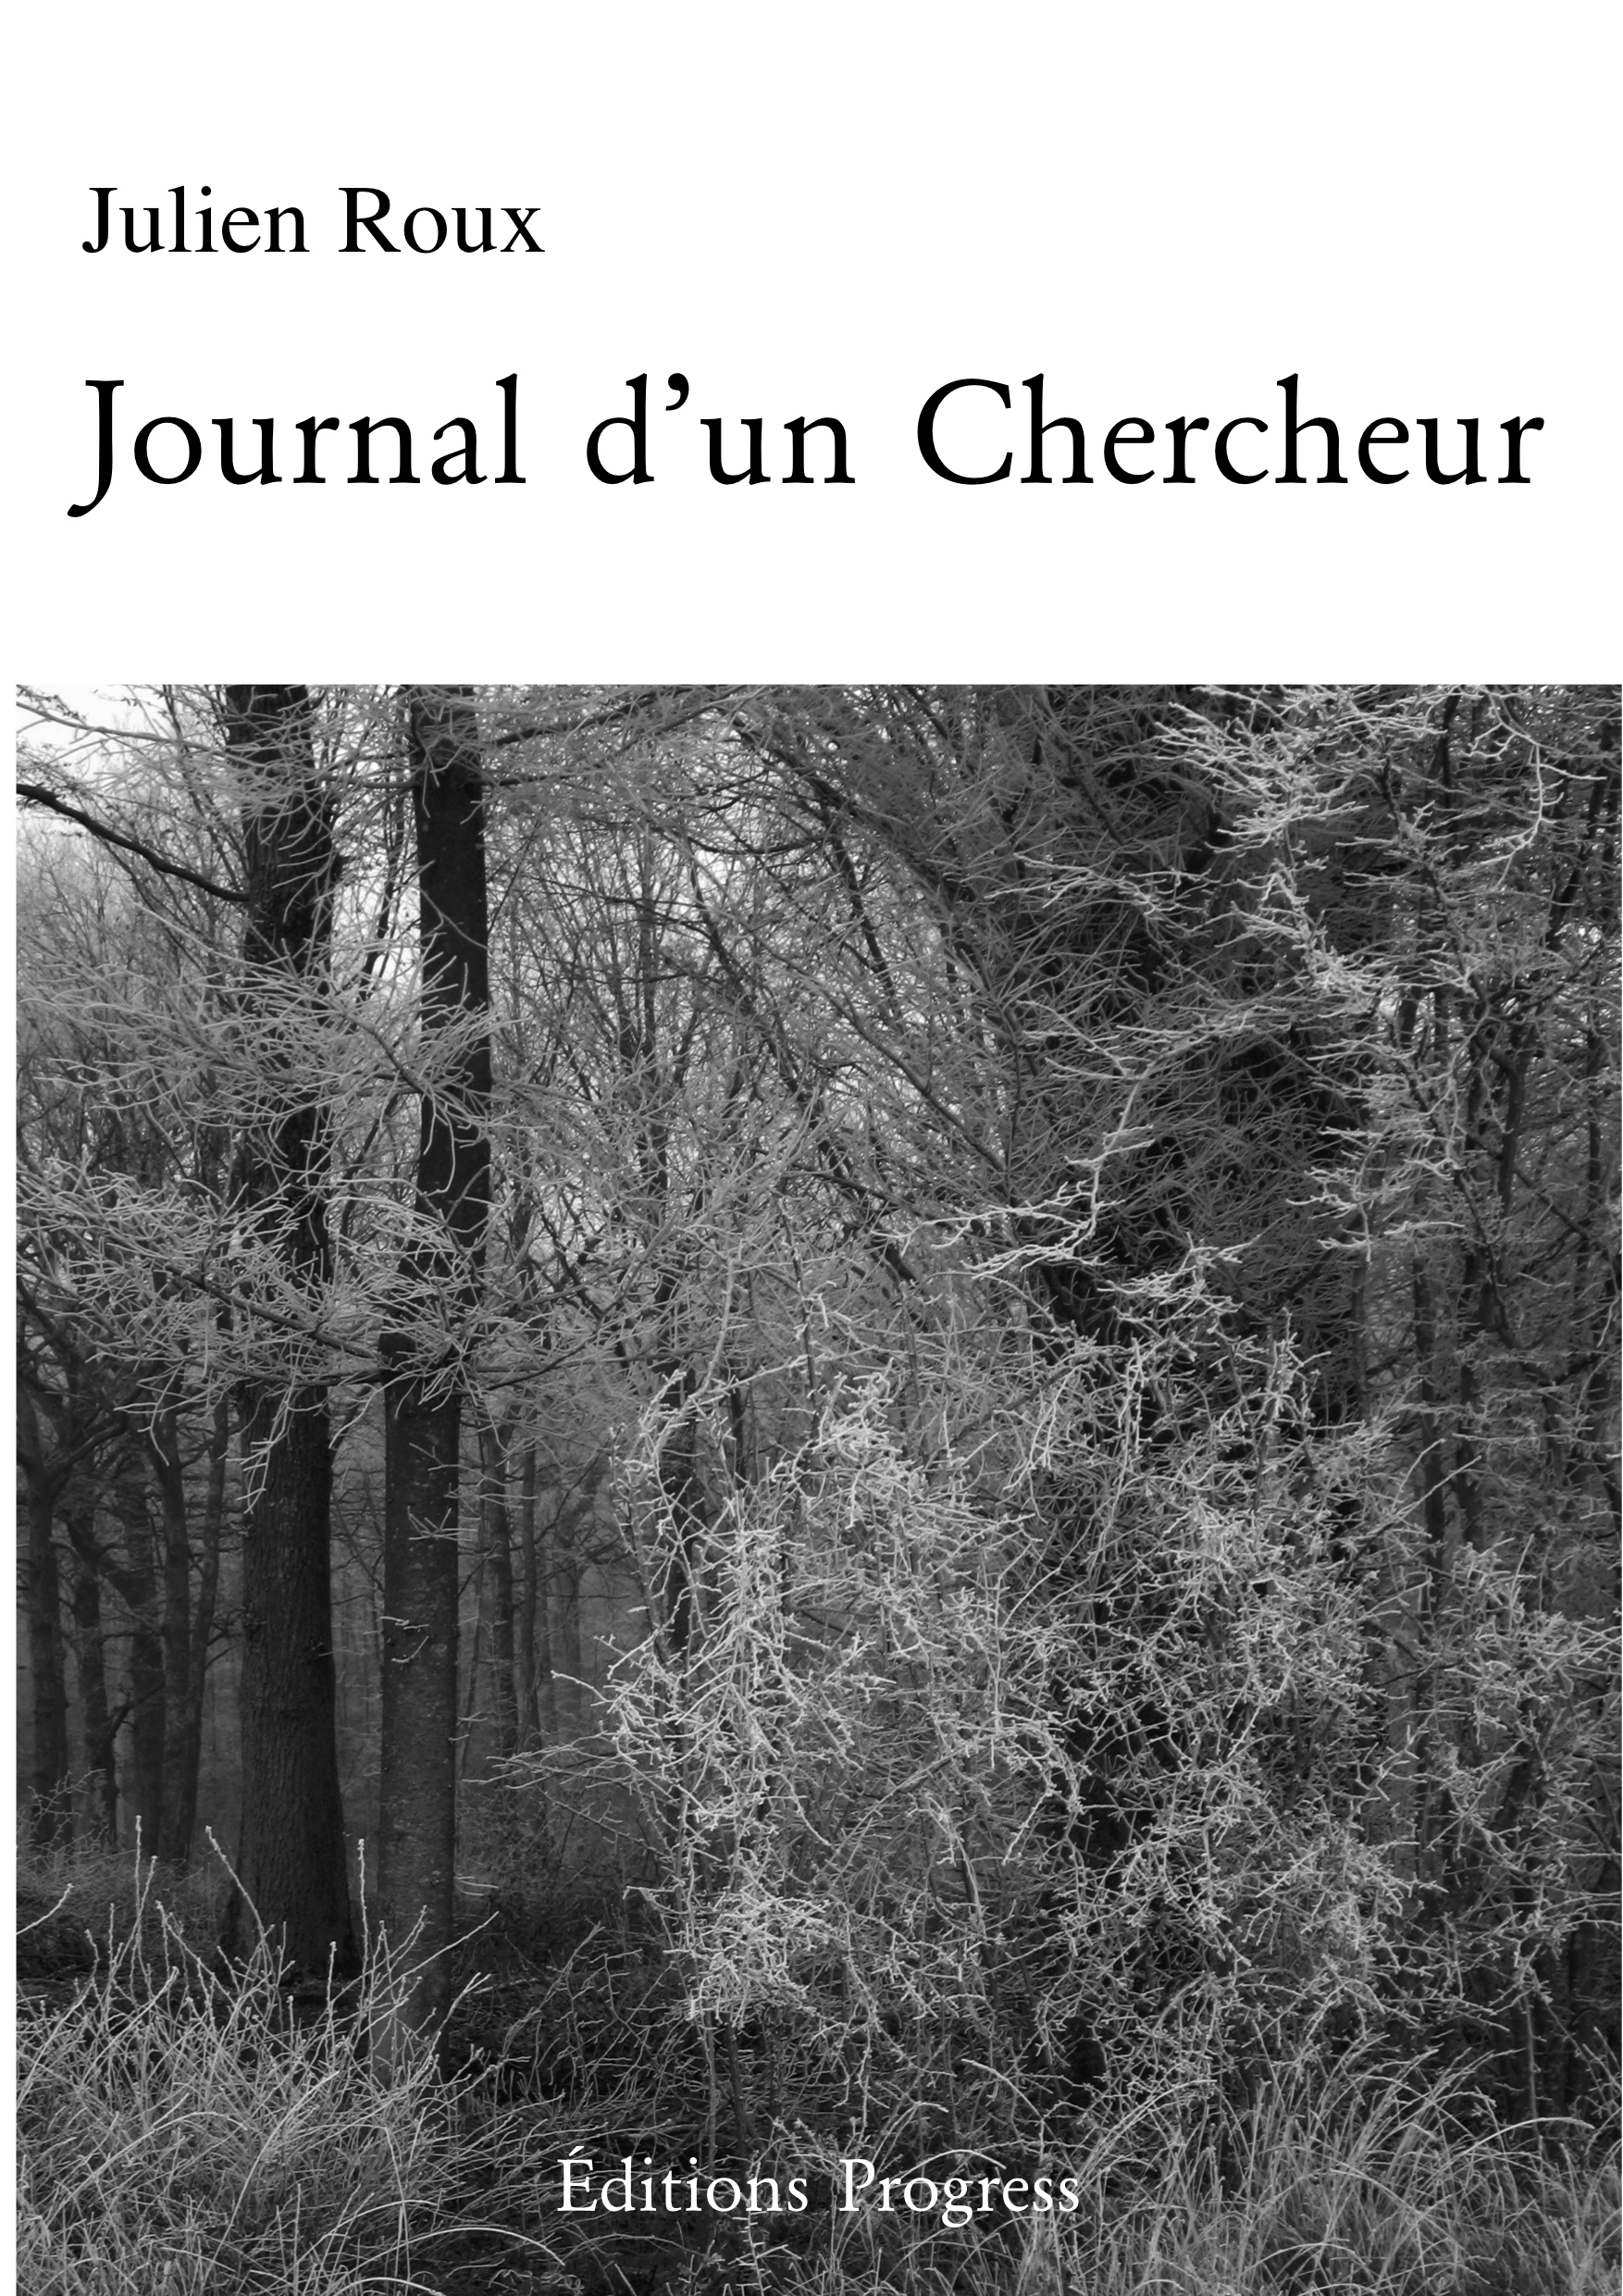 Journal d'un Chercheur